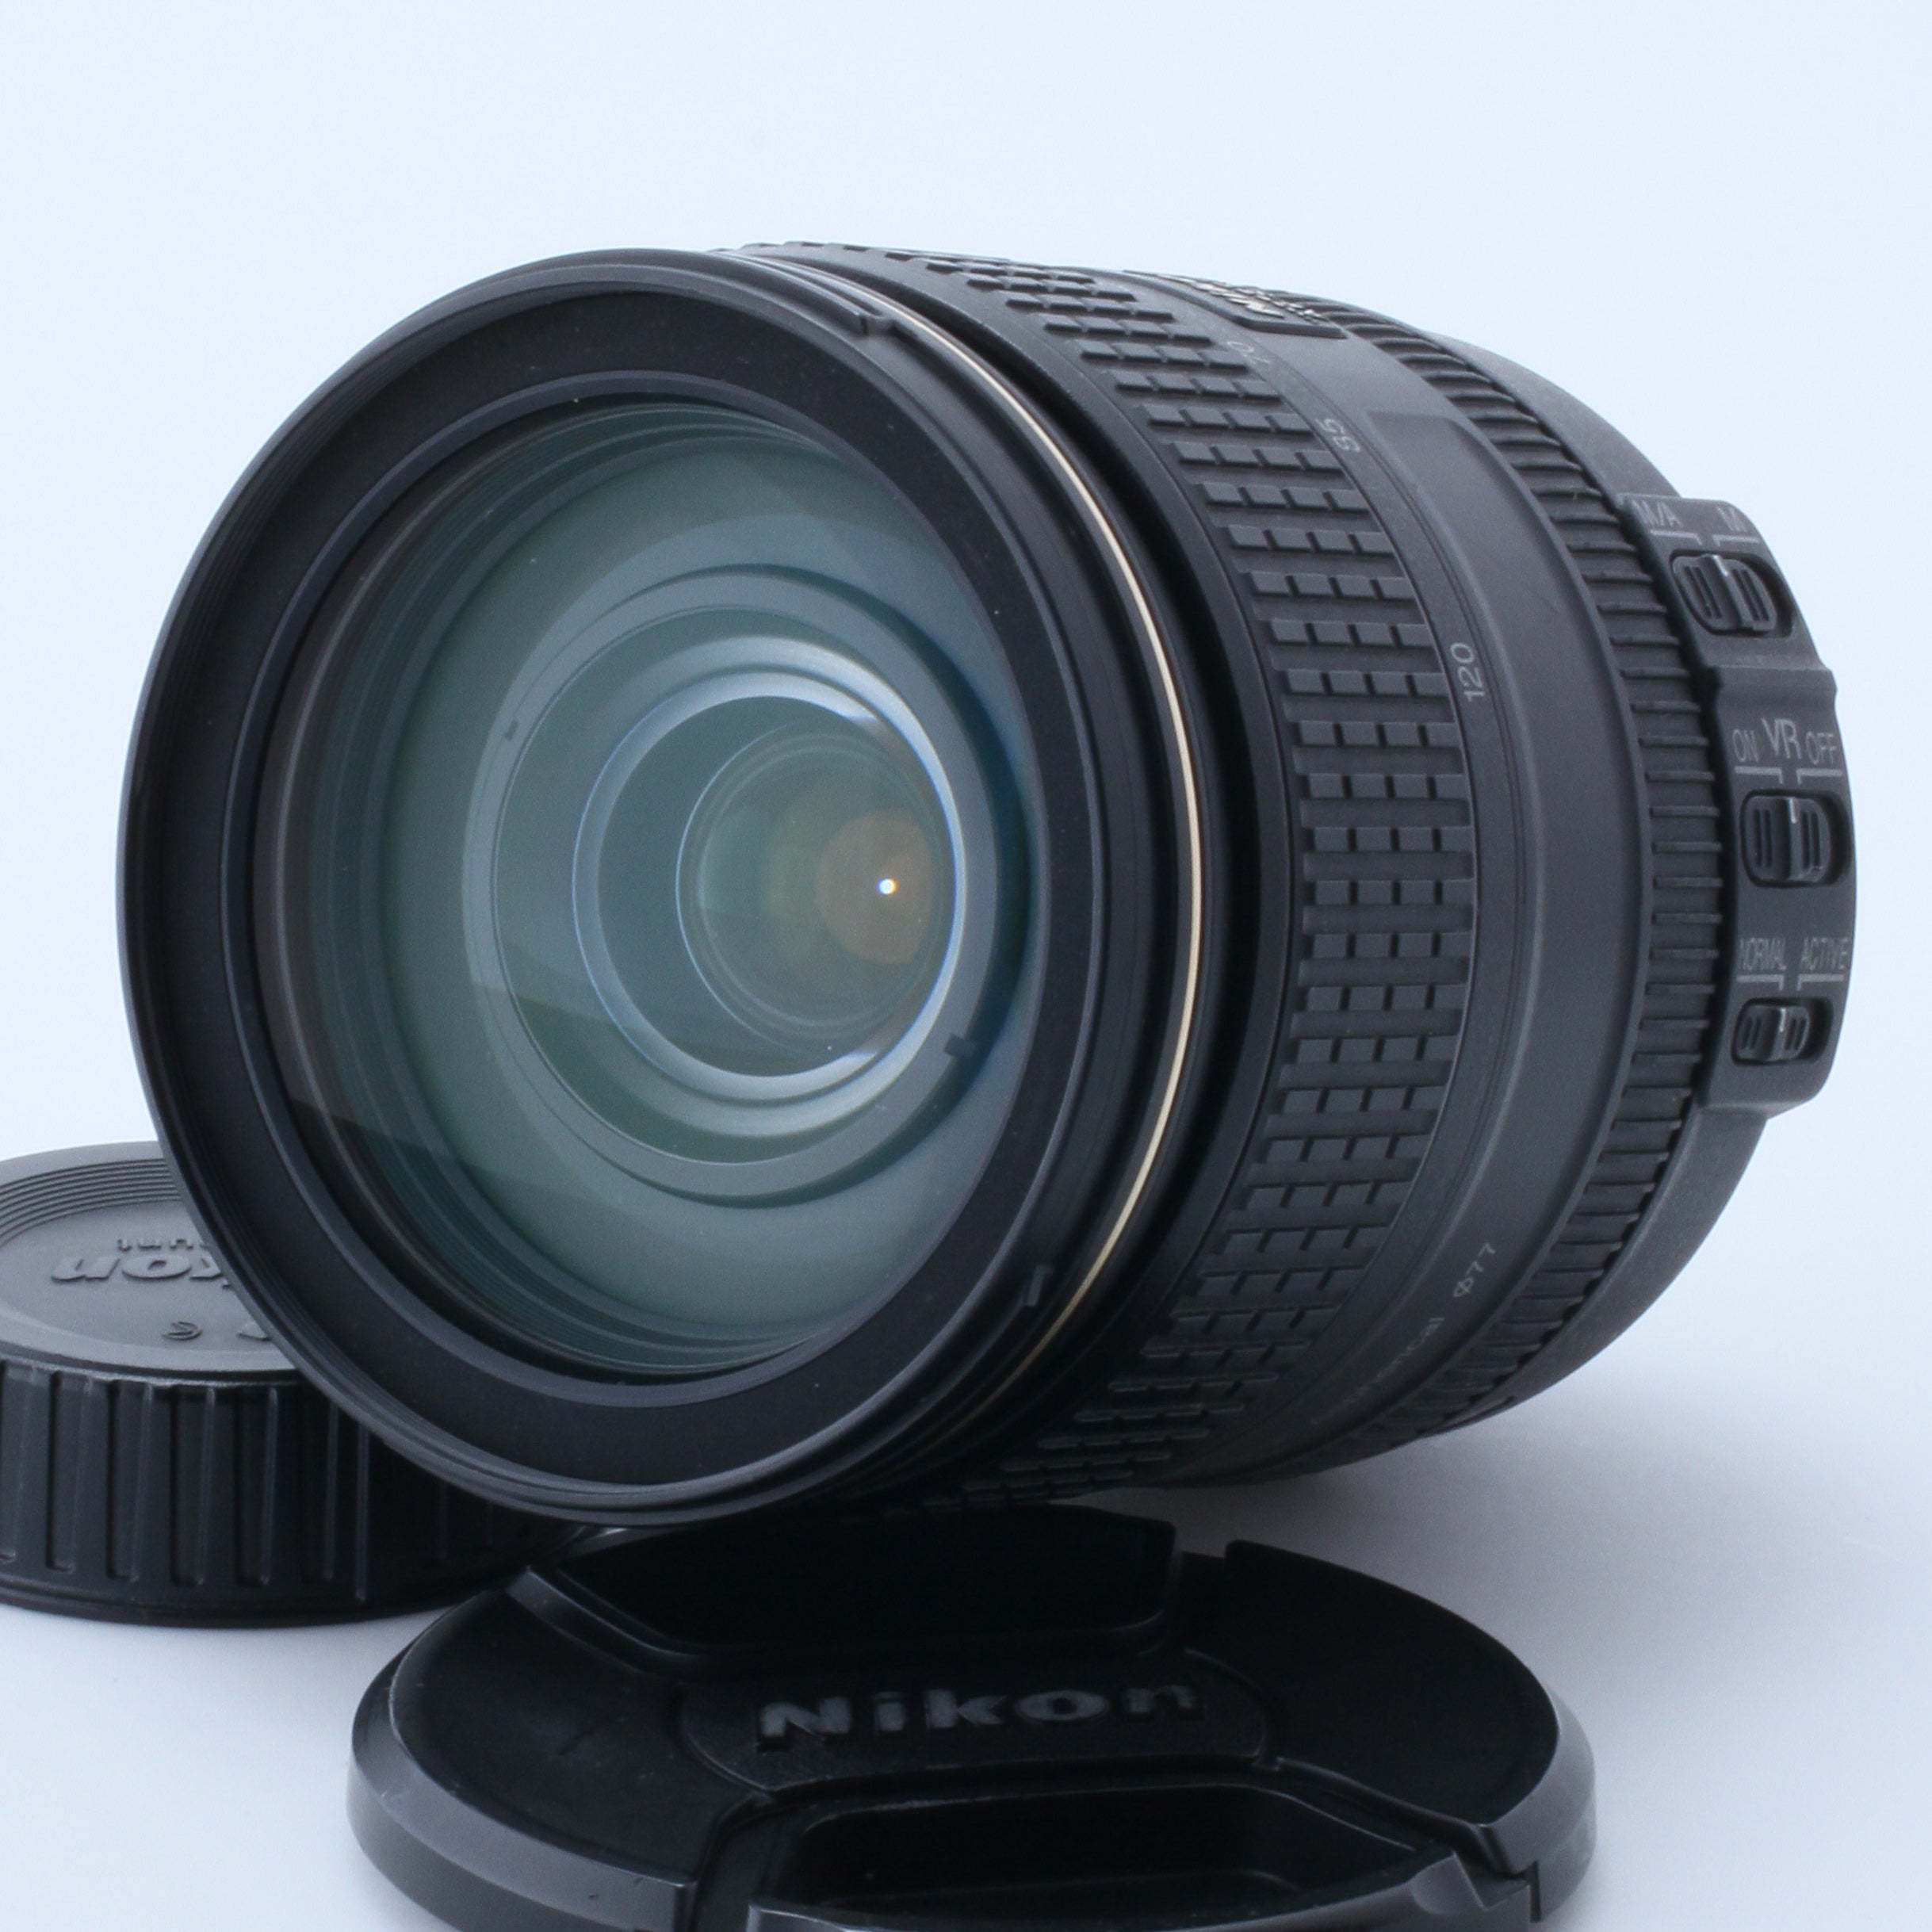 25.Nikon 24-120mm f/4G ED VR AF-S NIKKOR Lens for Digital SLR 62391925 Tested